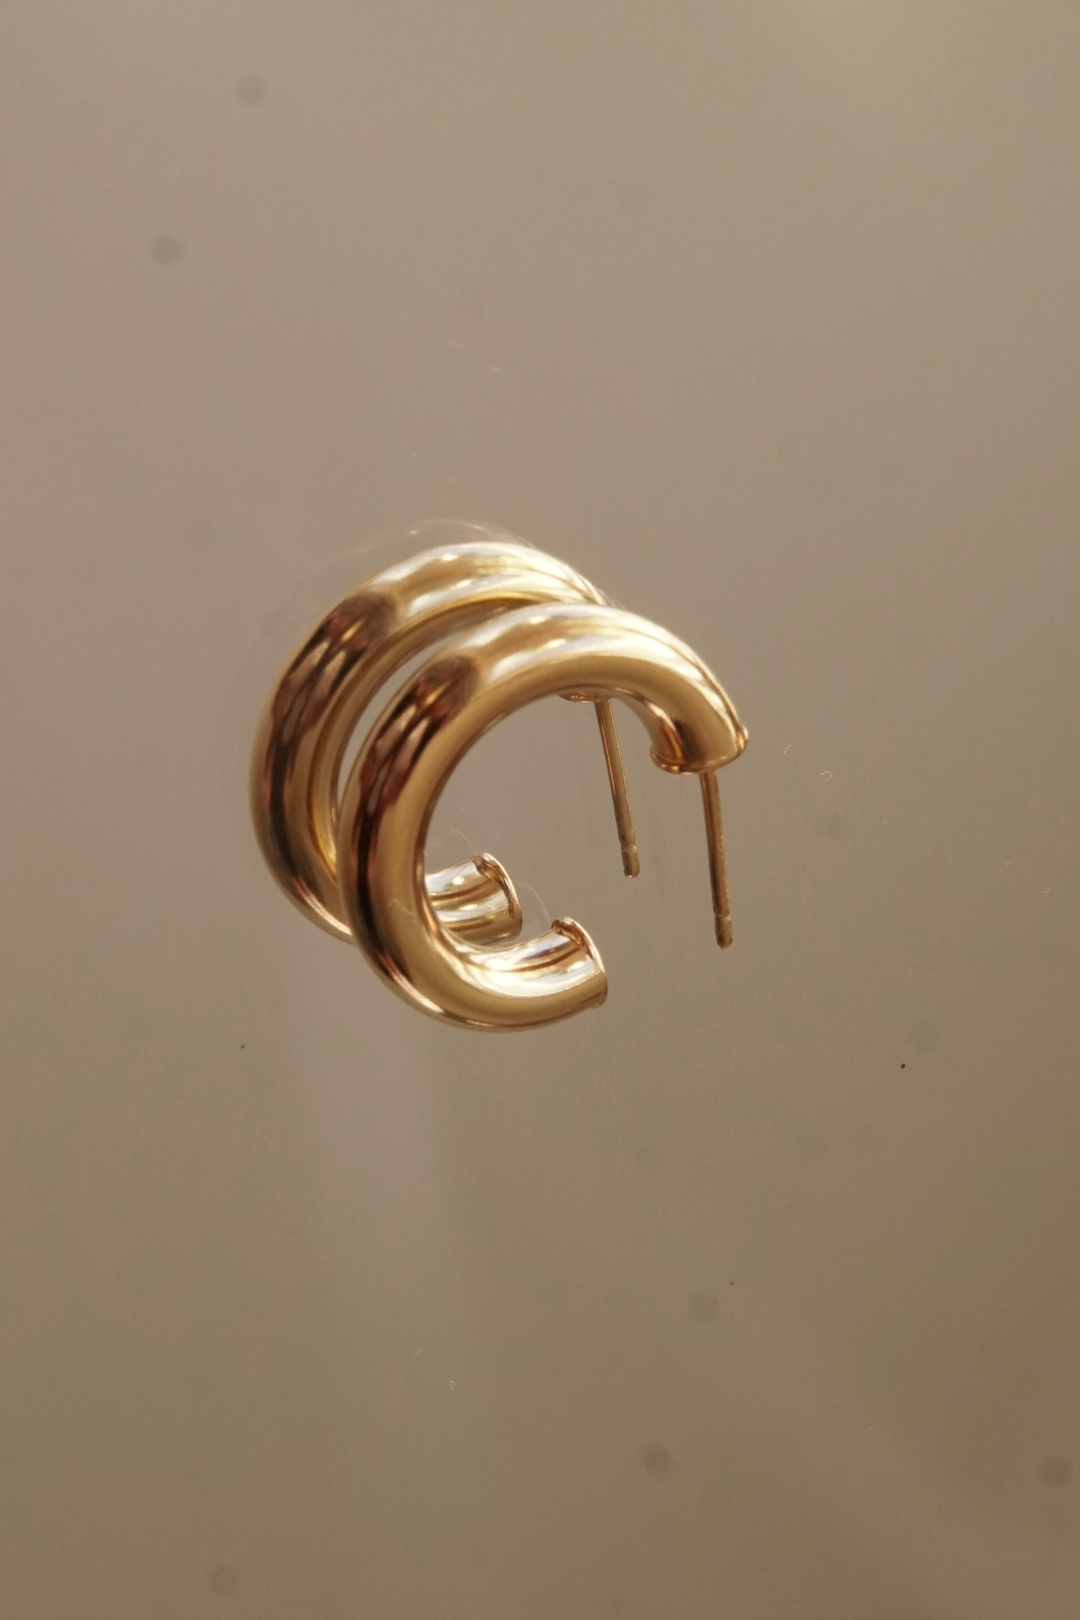 gold hoops, gold earrings, 14k earrings, gold hoop earrings, jewelry gift